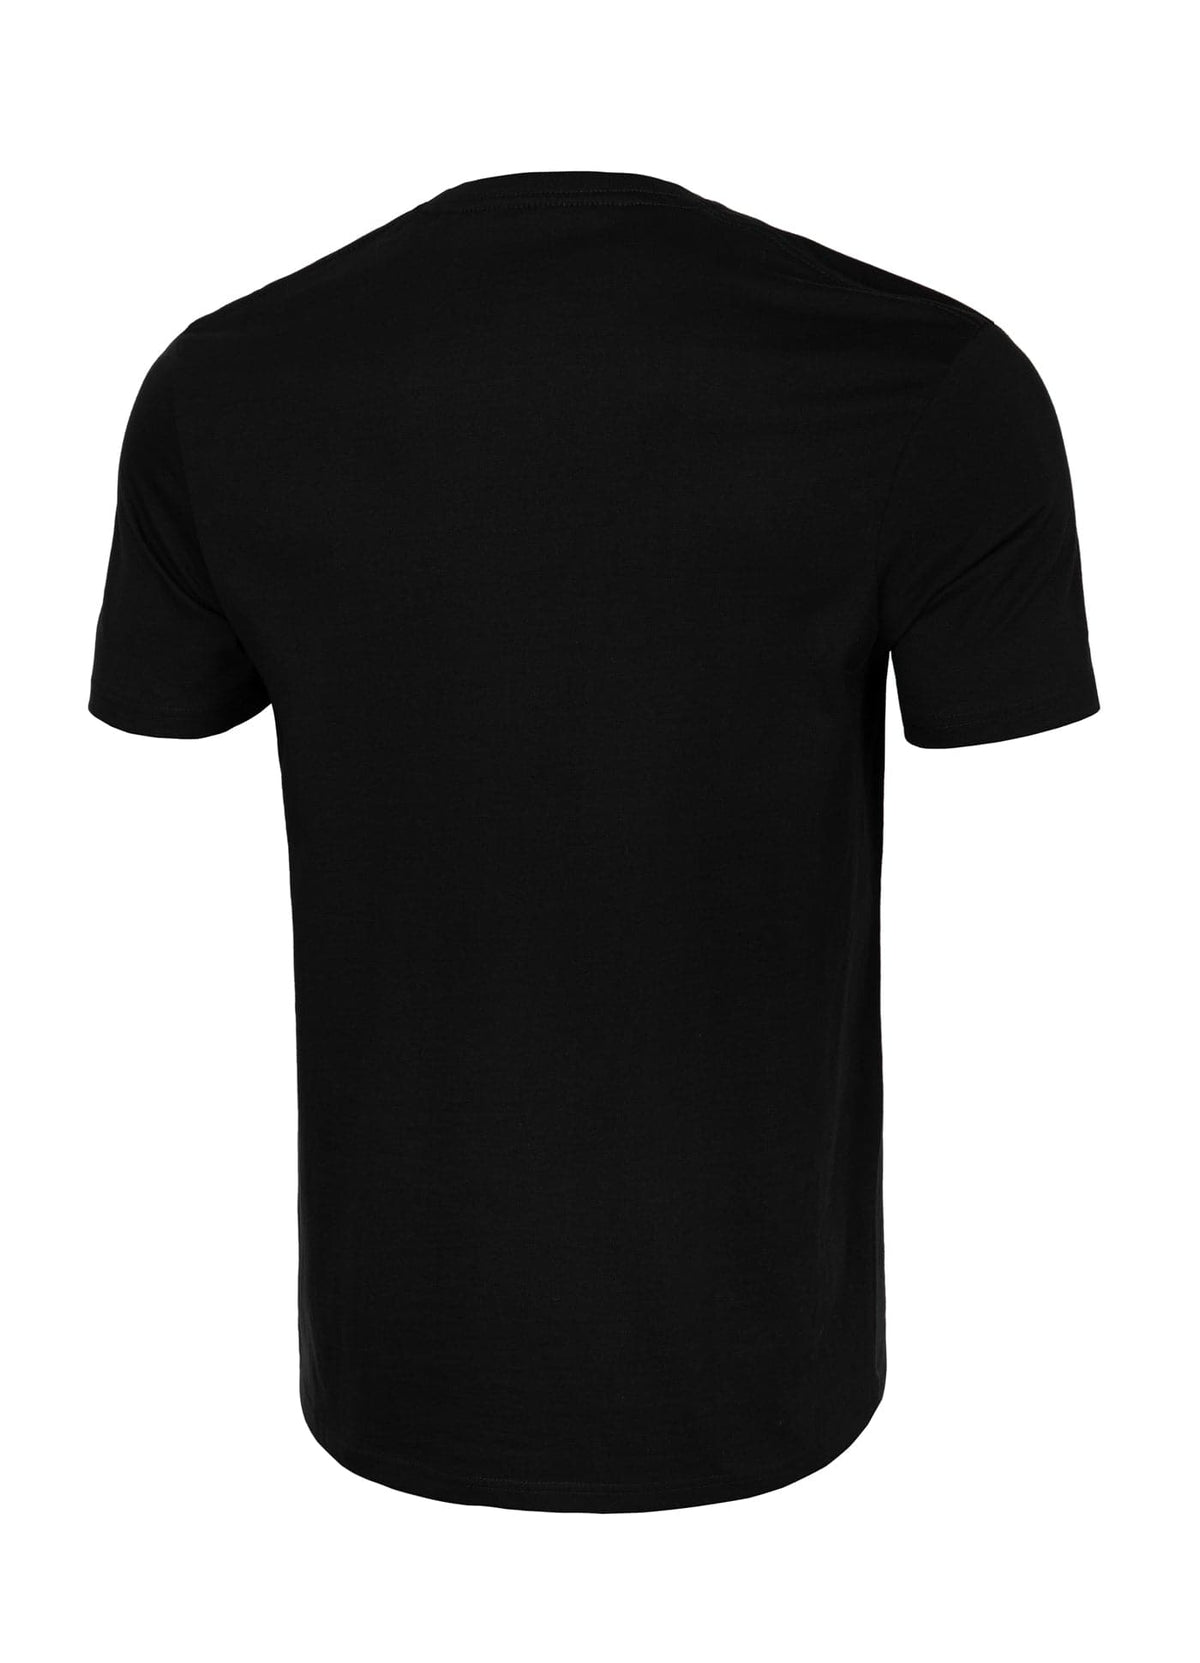 SCRATCH Lightweight Black T-shirt - Pitbullstore.eu